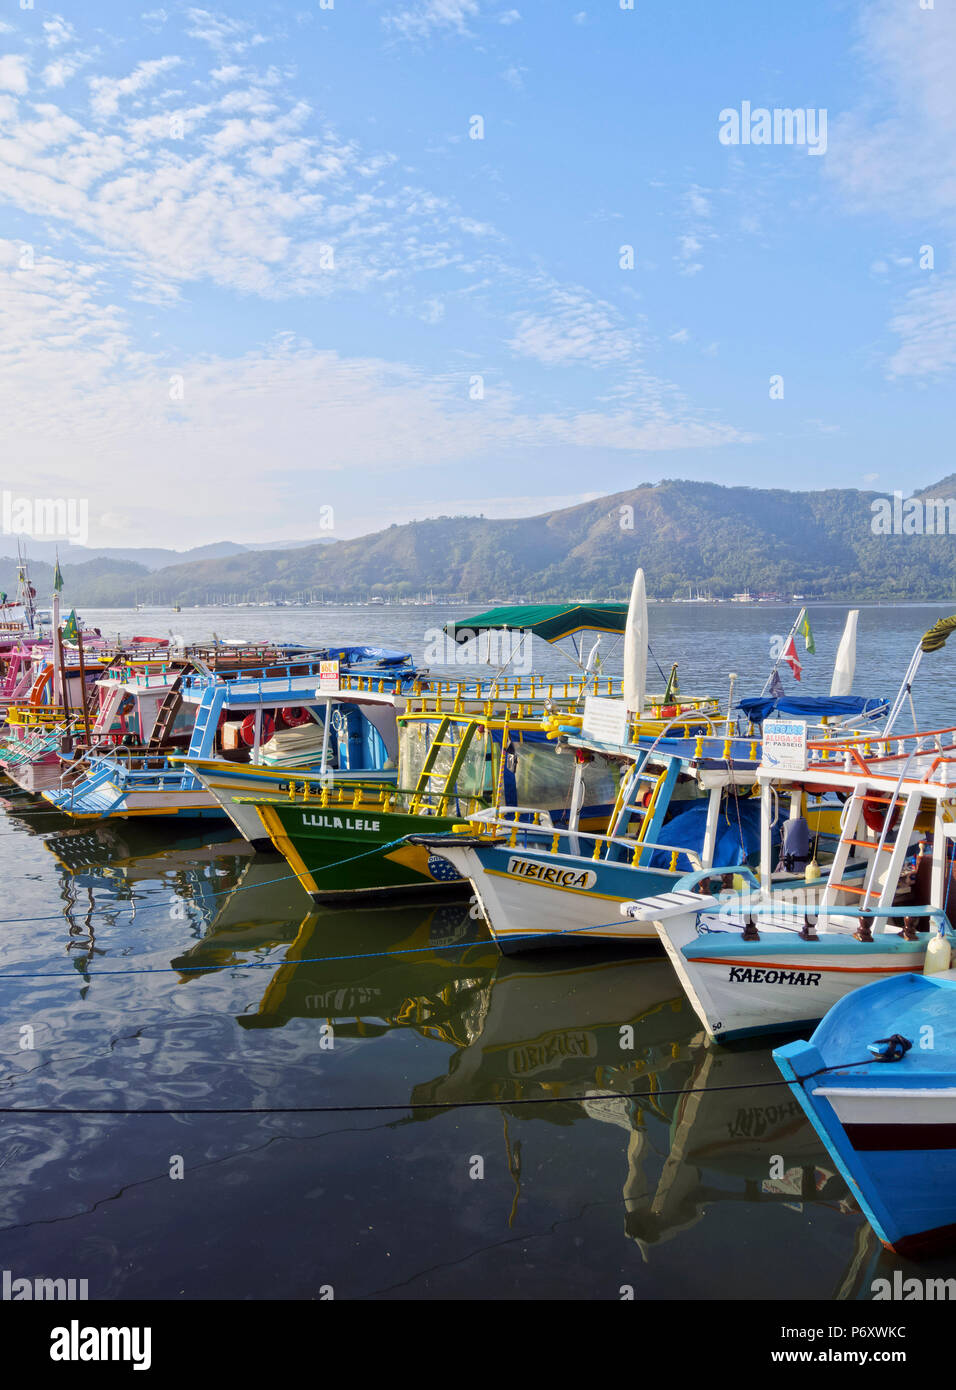 Brésil, État de Rio de Janeiro, Paraty, vue sur les bateaux colorés dans le port. Banque D'Images